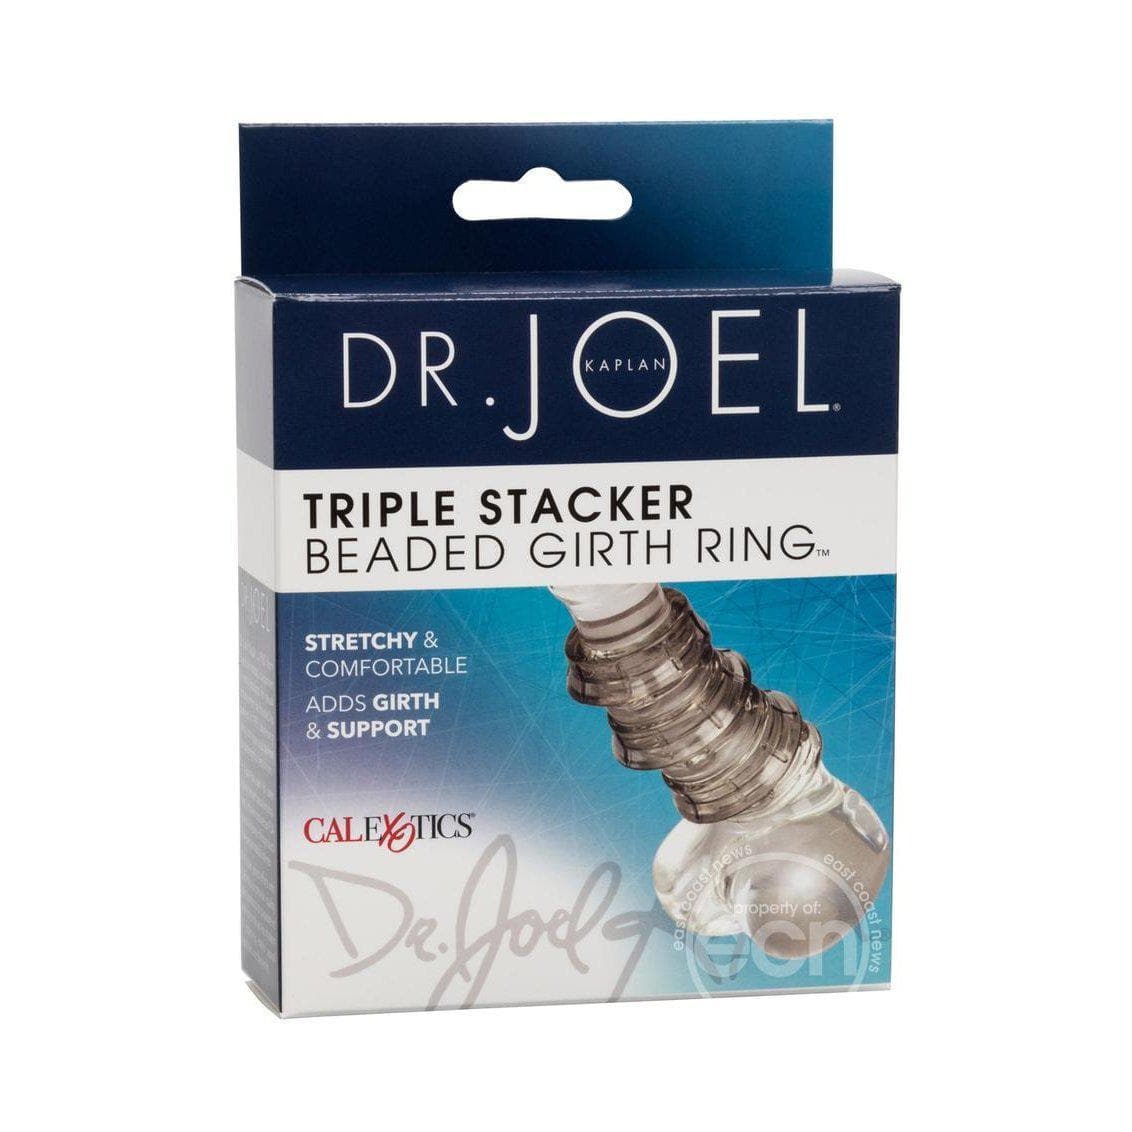 Dr. Joel Kaplan Beaded Girth Ring Triple Stacker Penis Ring - Romantic Blessings